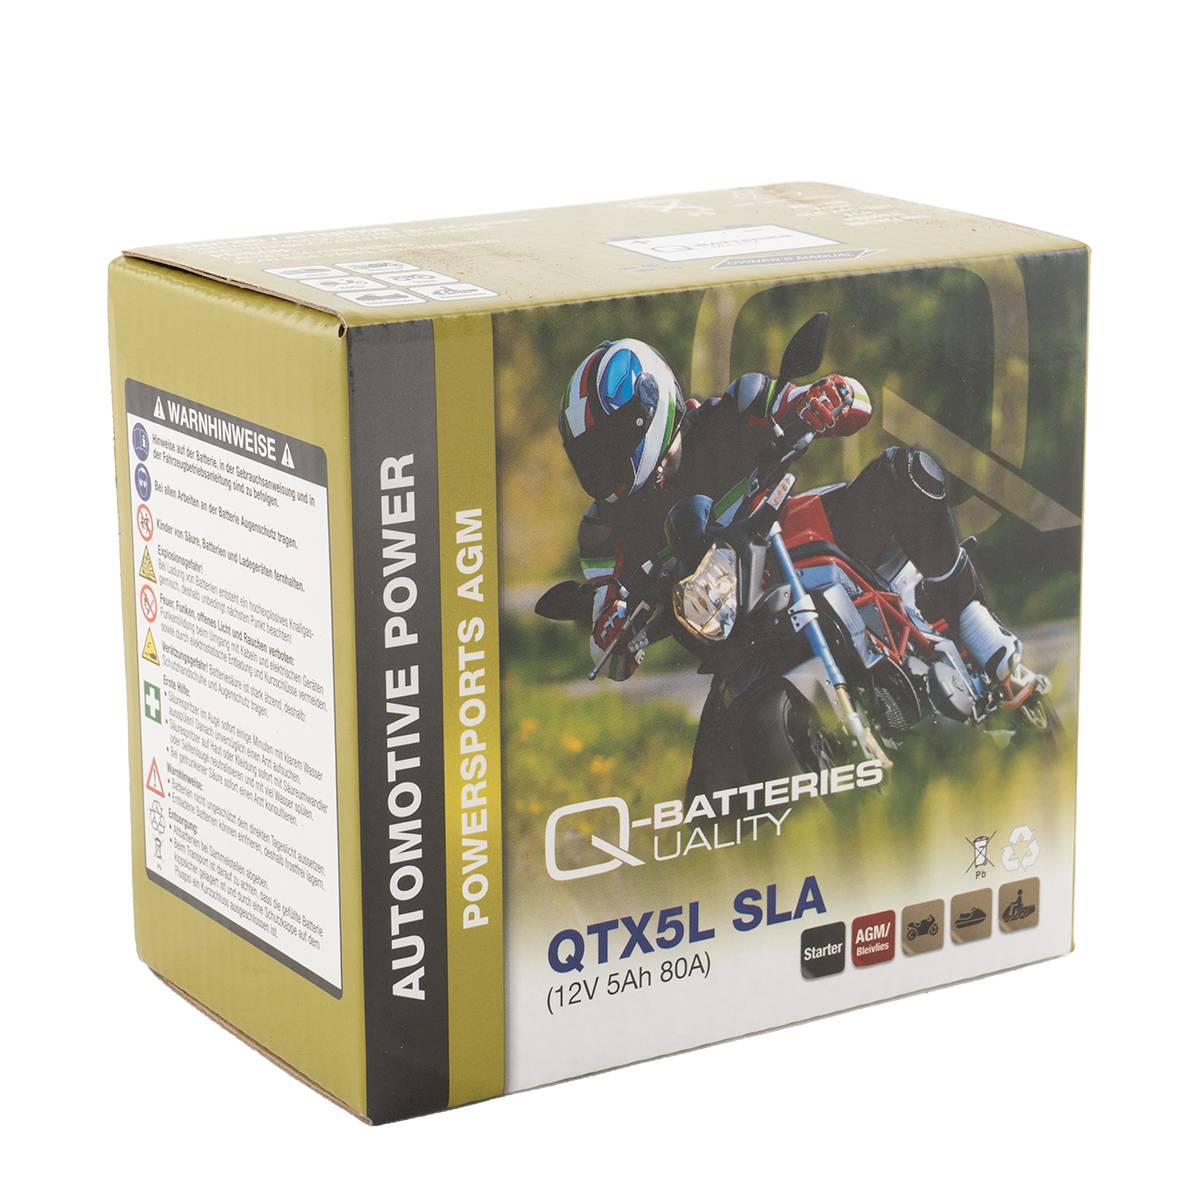 Q-Batteries QTX5L SLA AGM Motorradbatterie 12V 4Ah 60A 